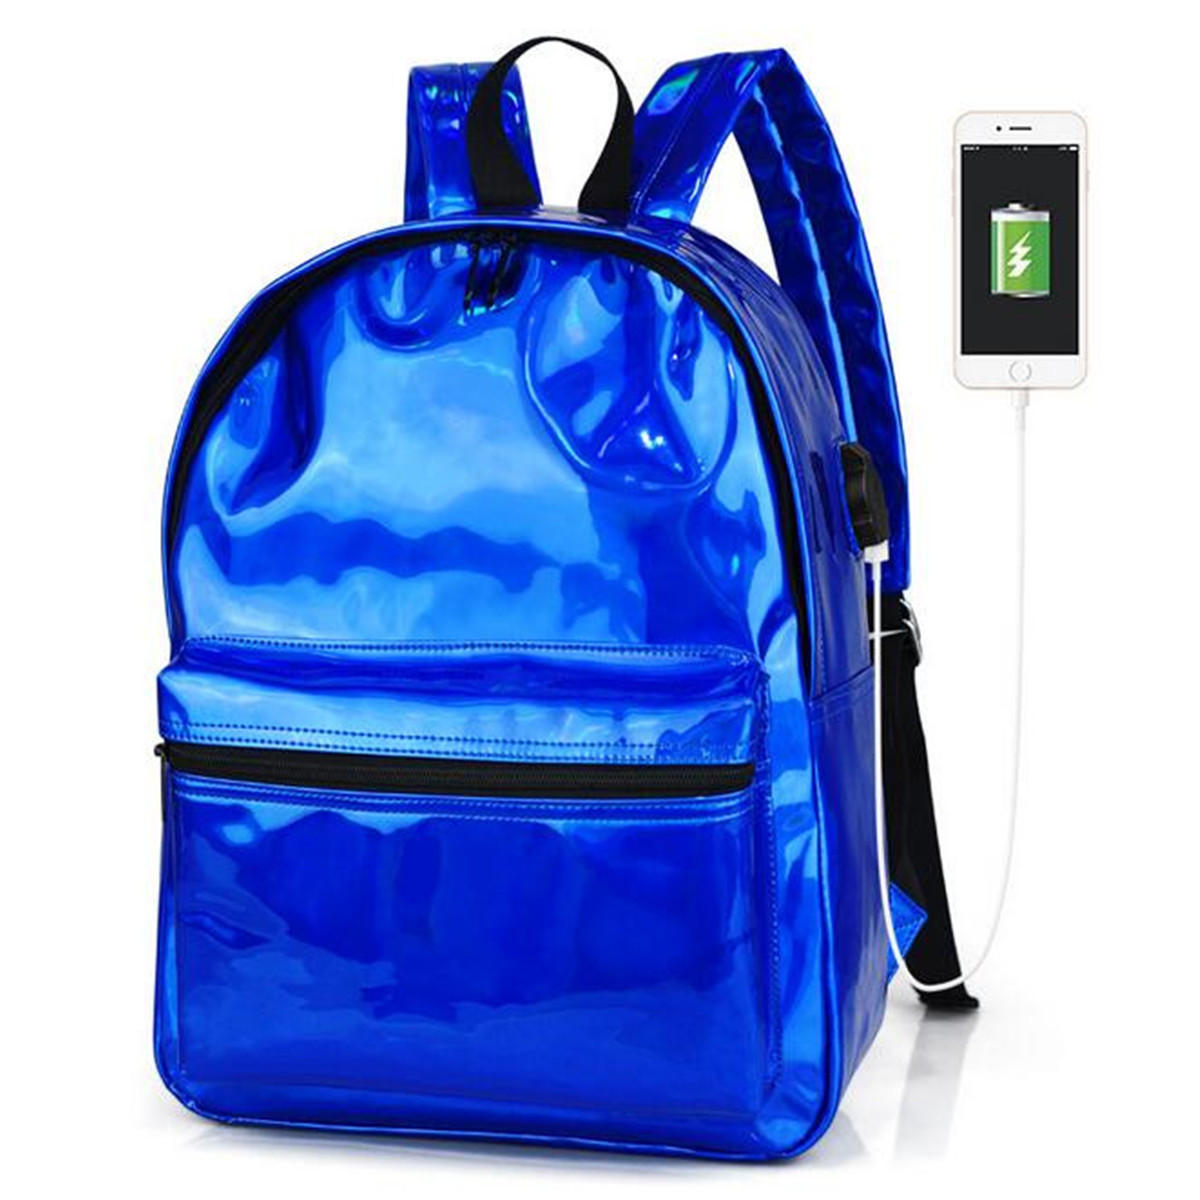 Sac à dos usb pu imperméable sac d'école pour ordinateur portable 14 pouces sac de voyage voyage sac à bandoulière sac à main